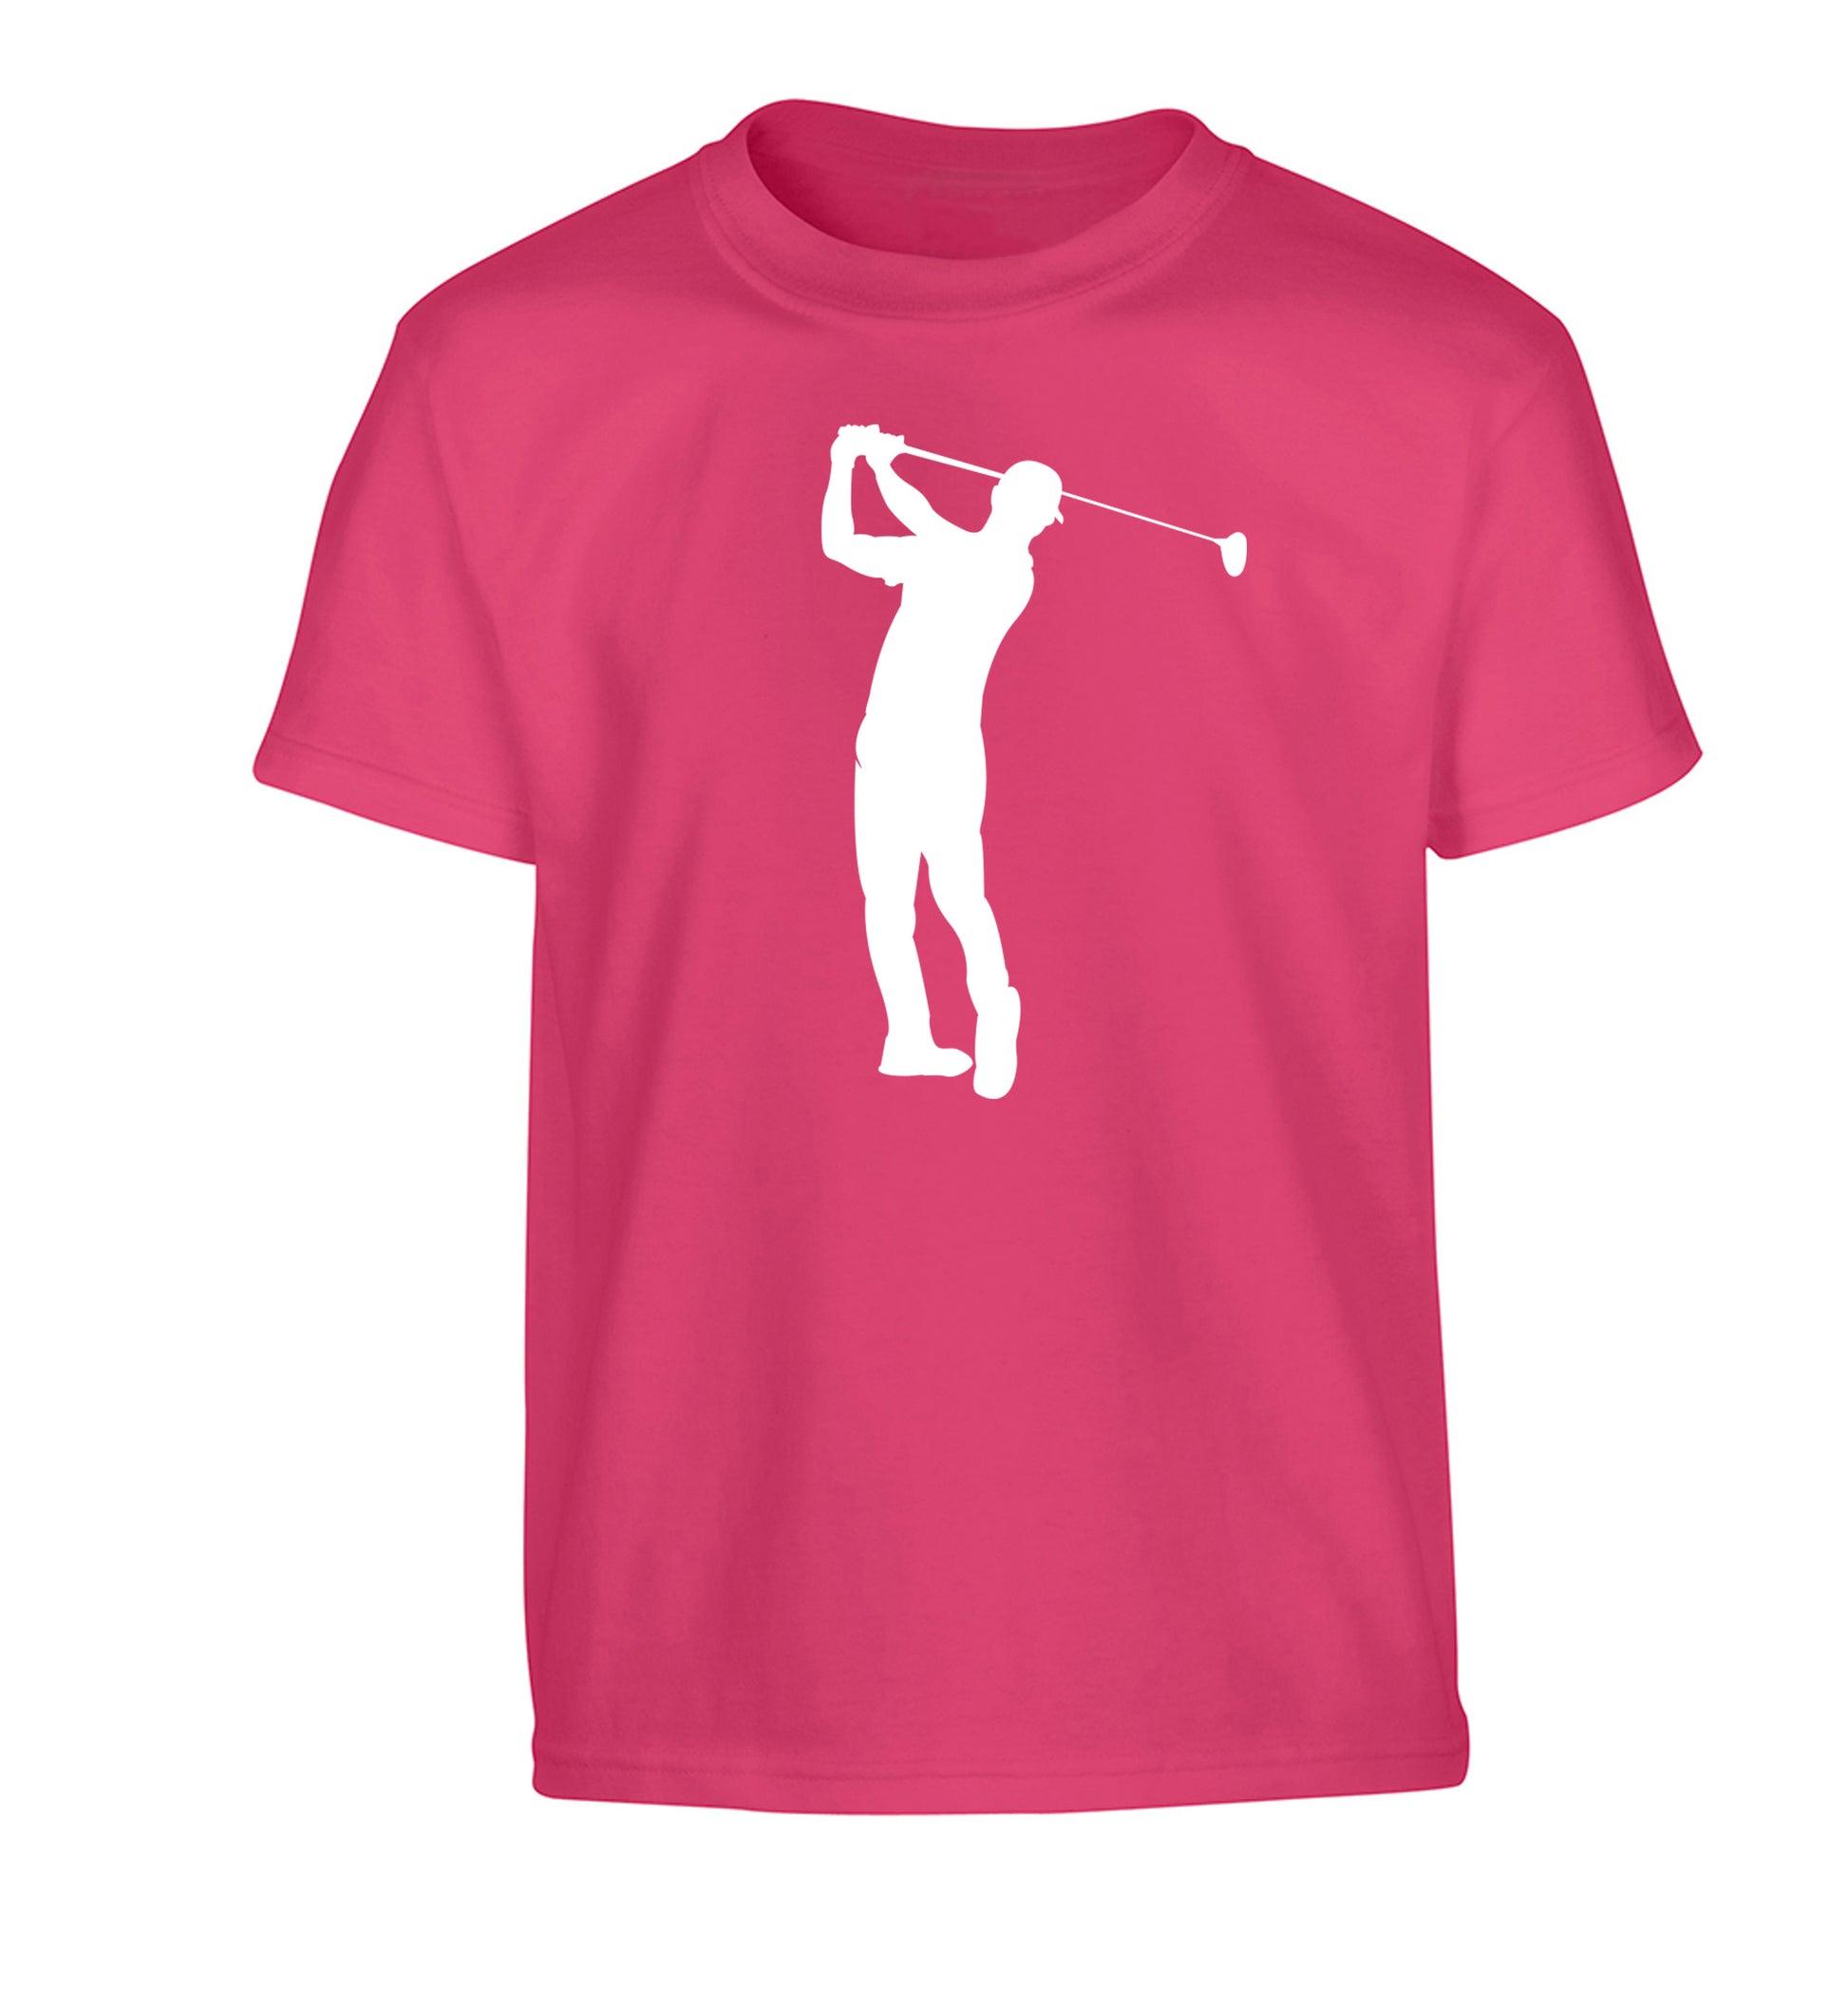 Golfer Illustration Children's pink Tshirt 12-13 Years